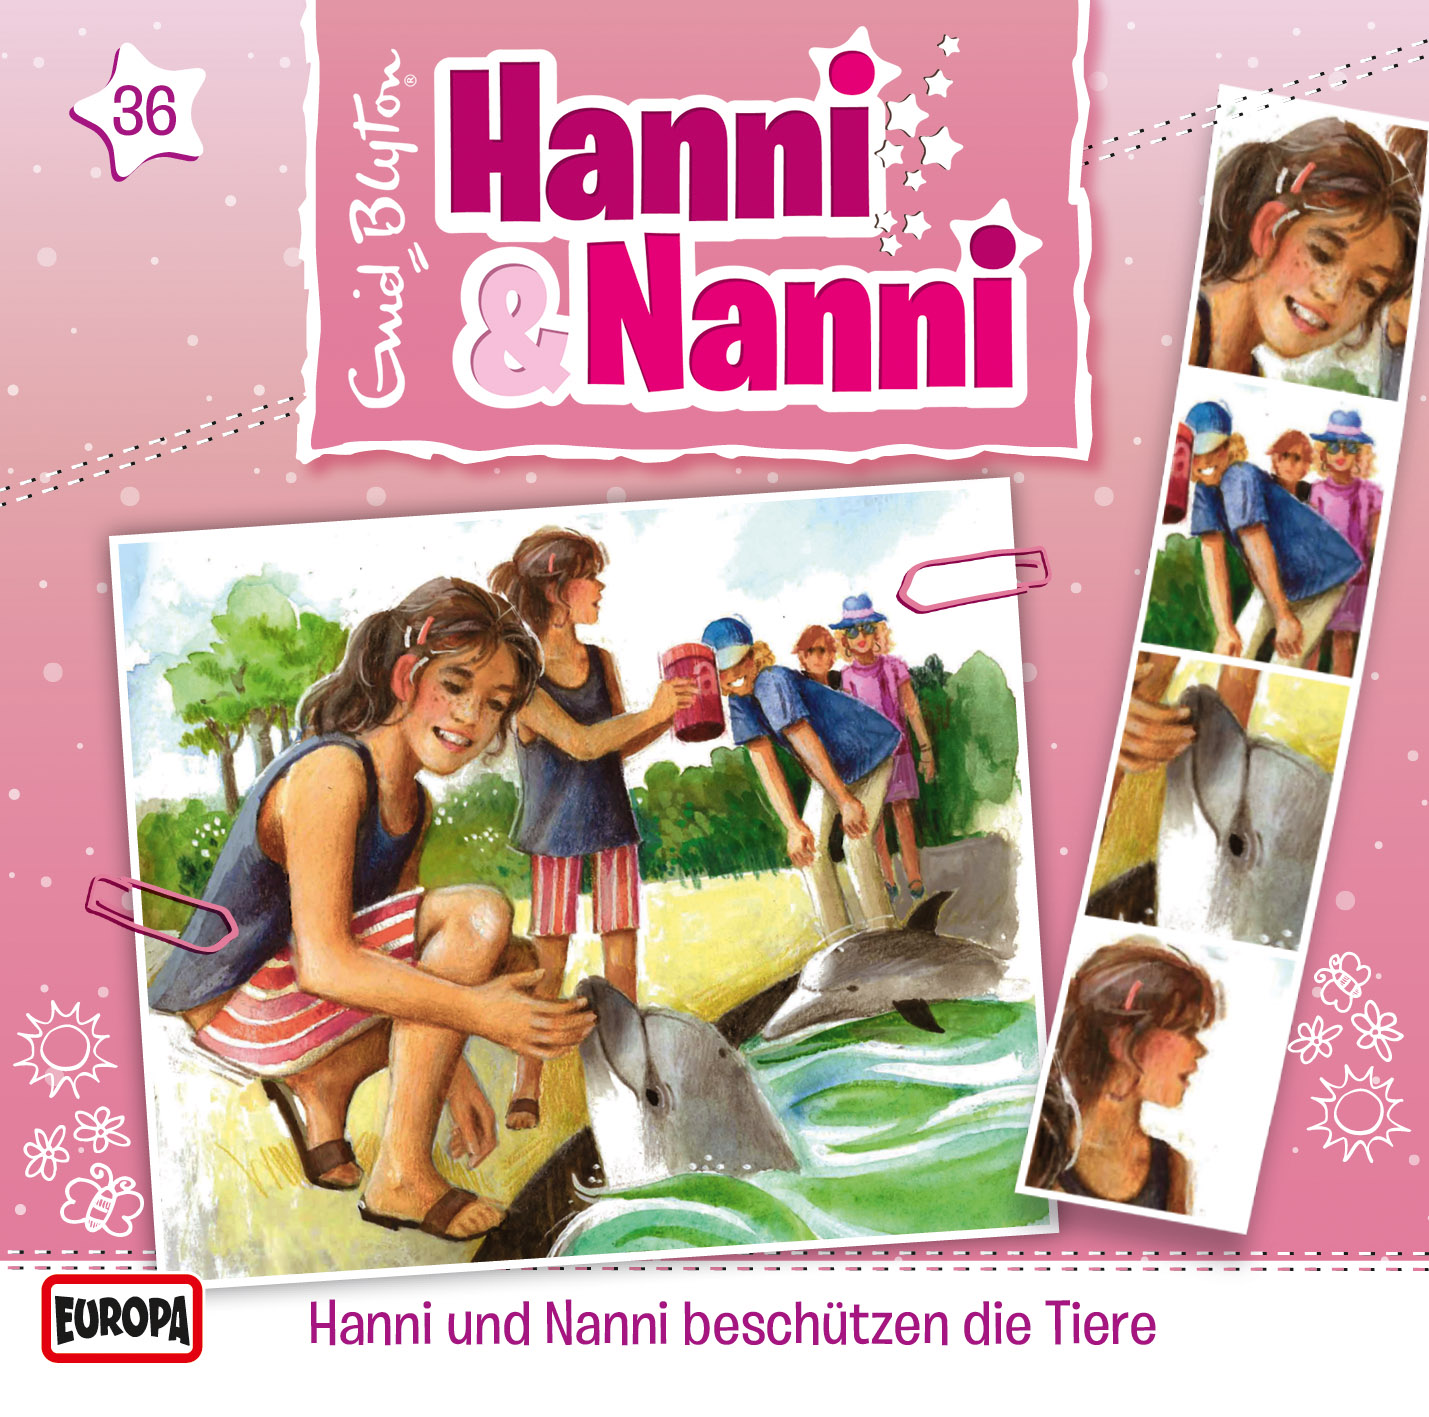 Hanni und Nanni: Hanni & Nanni beschützen die Tiere